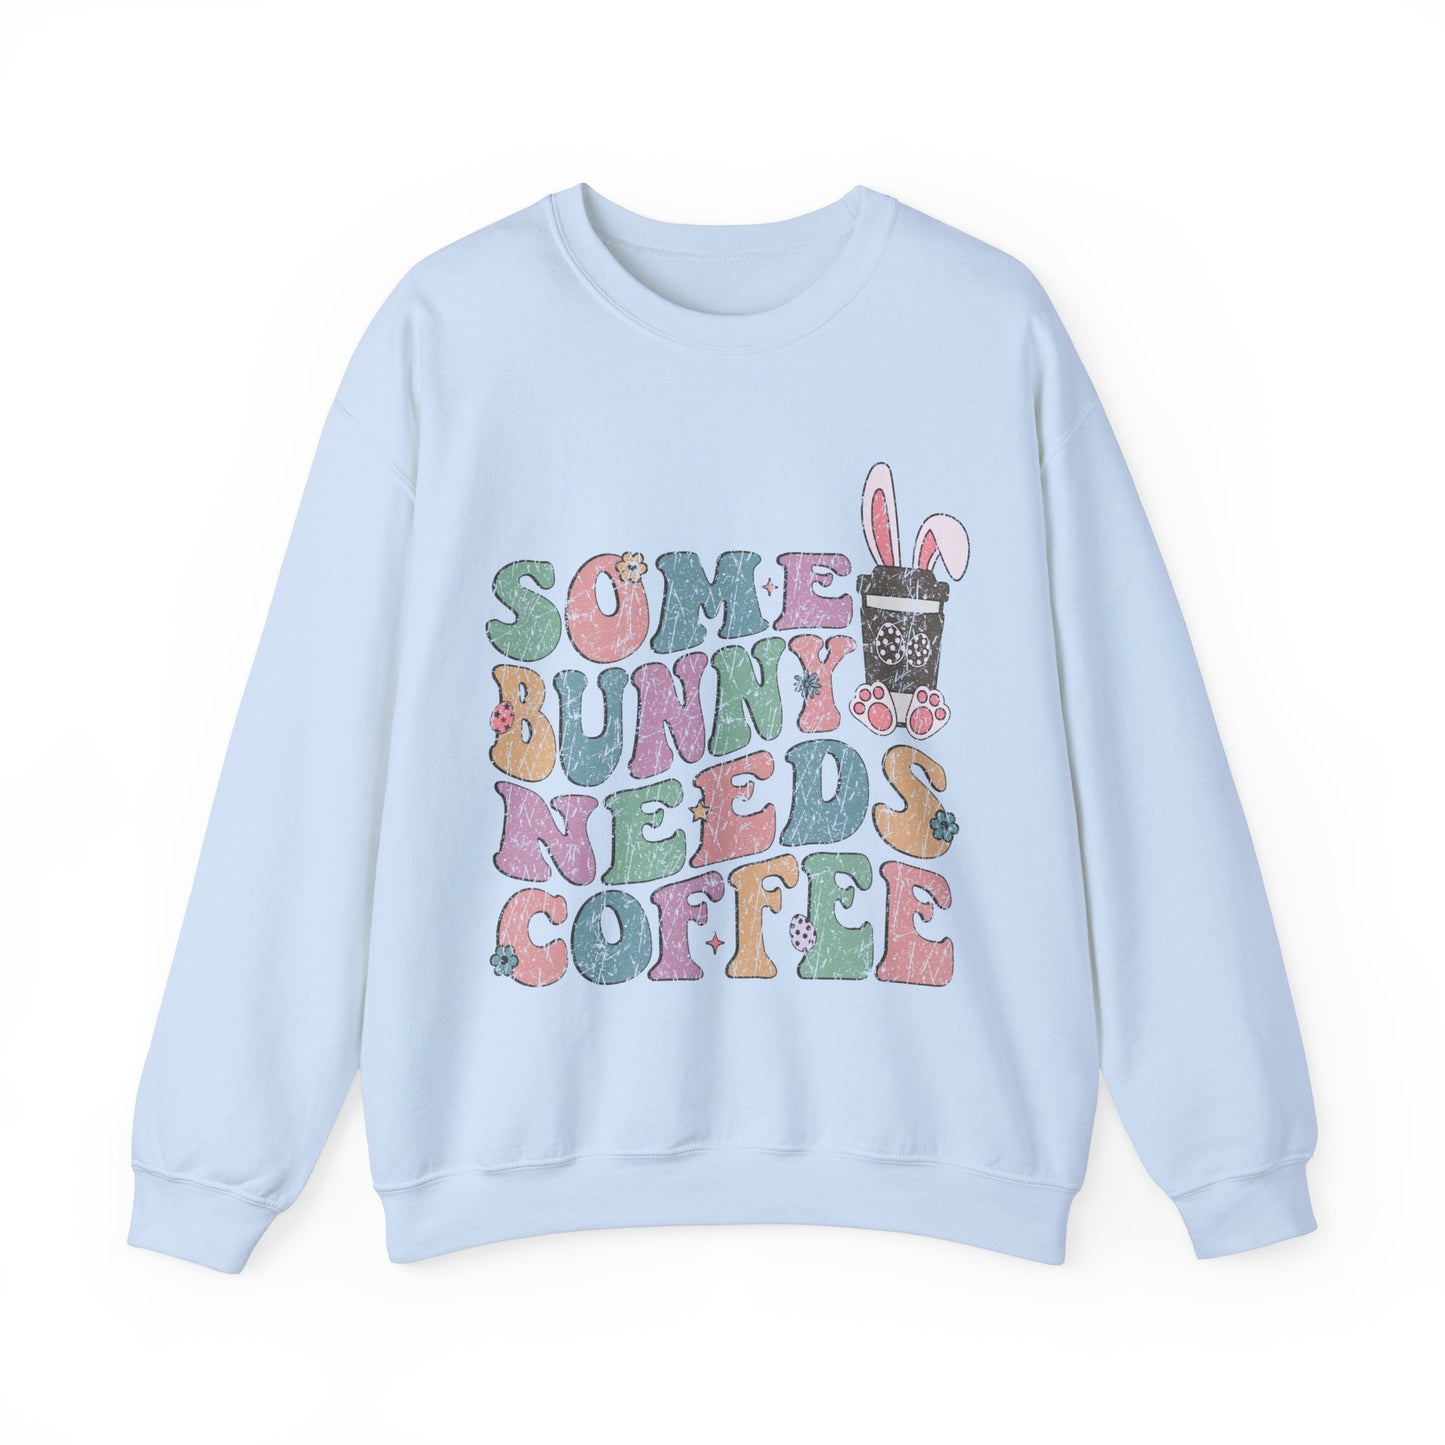 Some Bunny Needs Coffee Women's Easter Sweatshirt